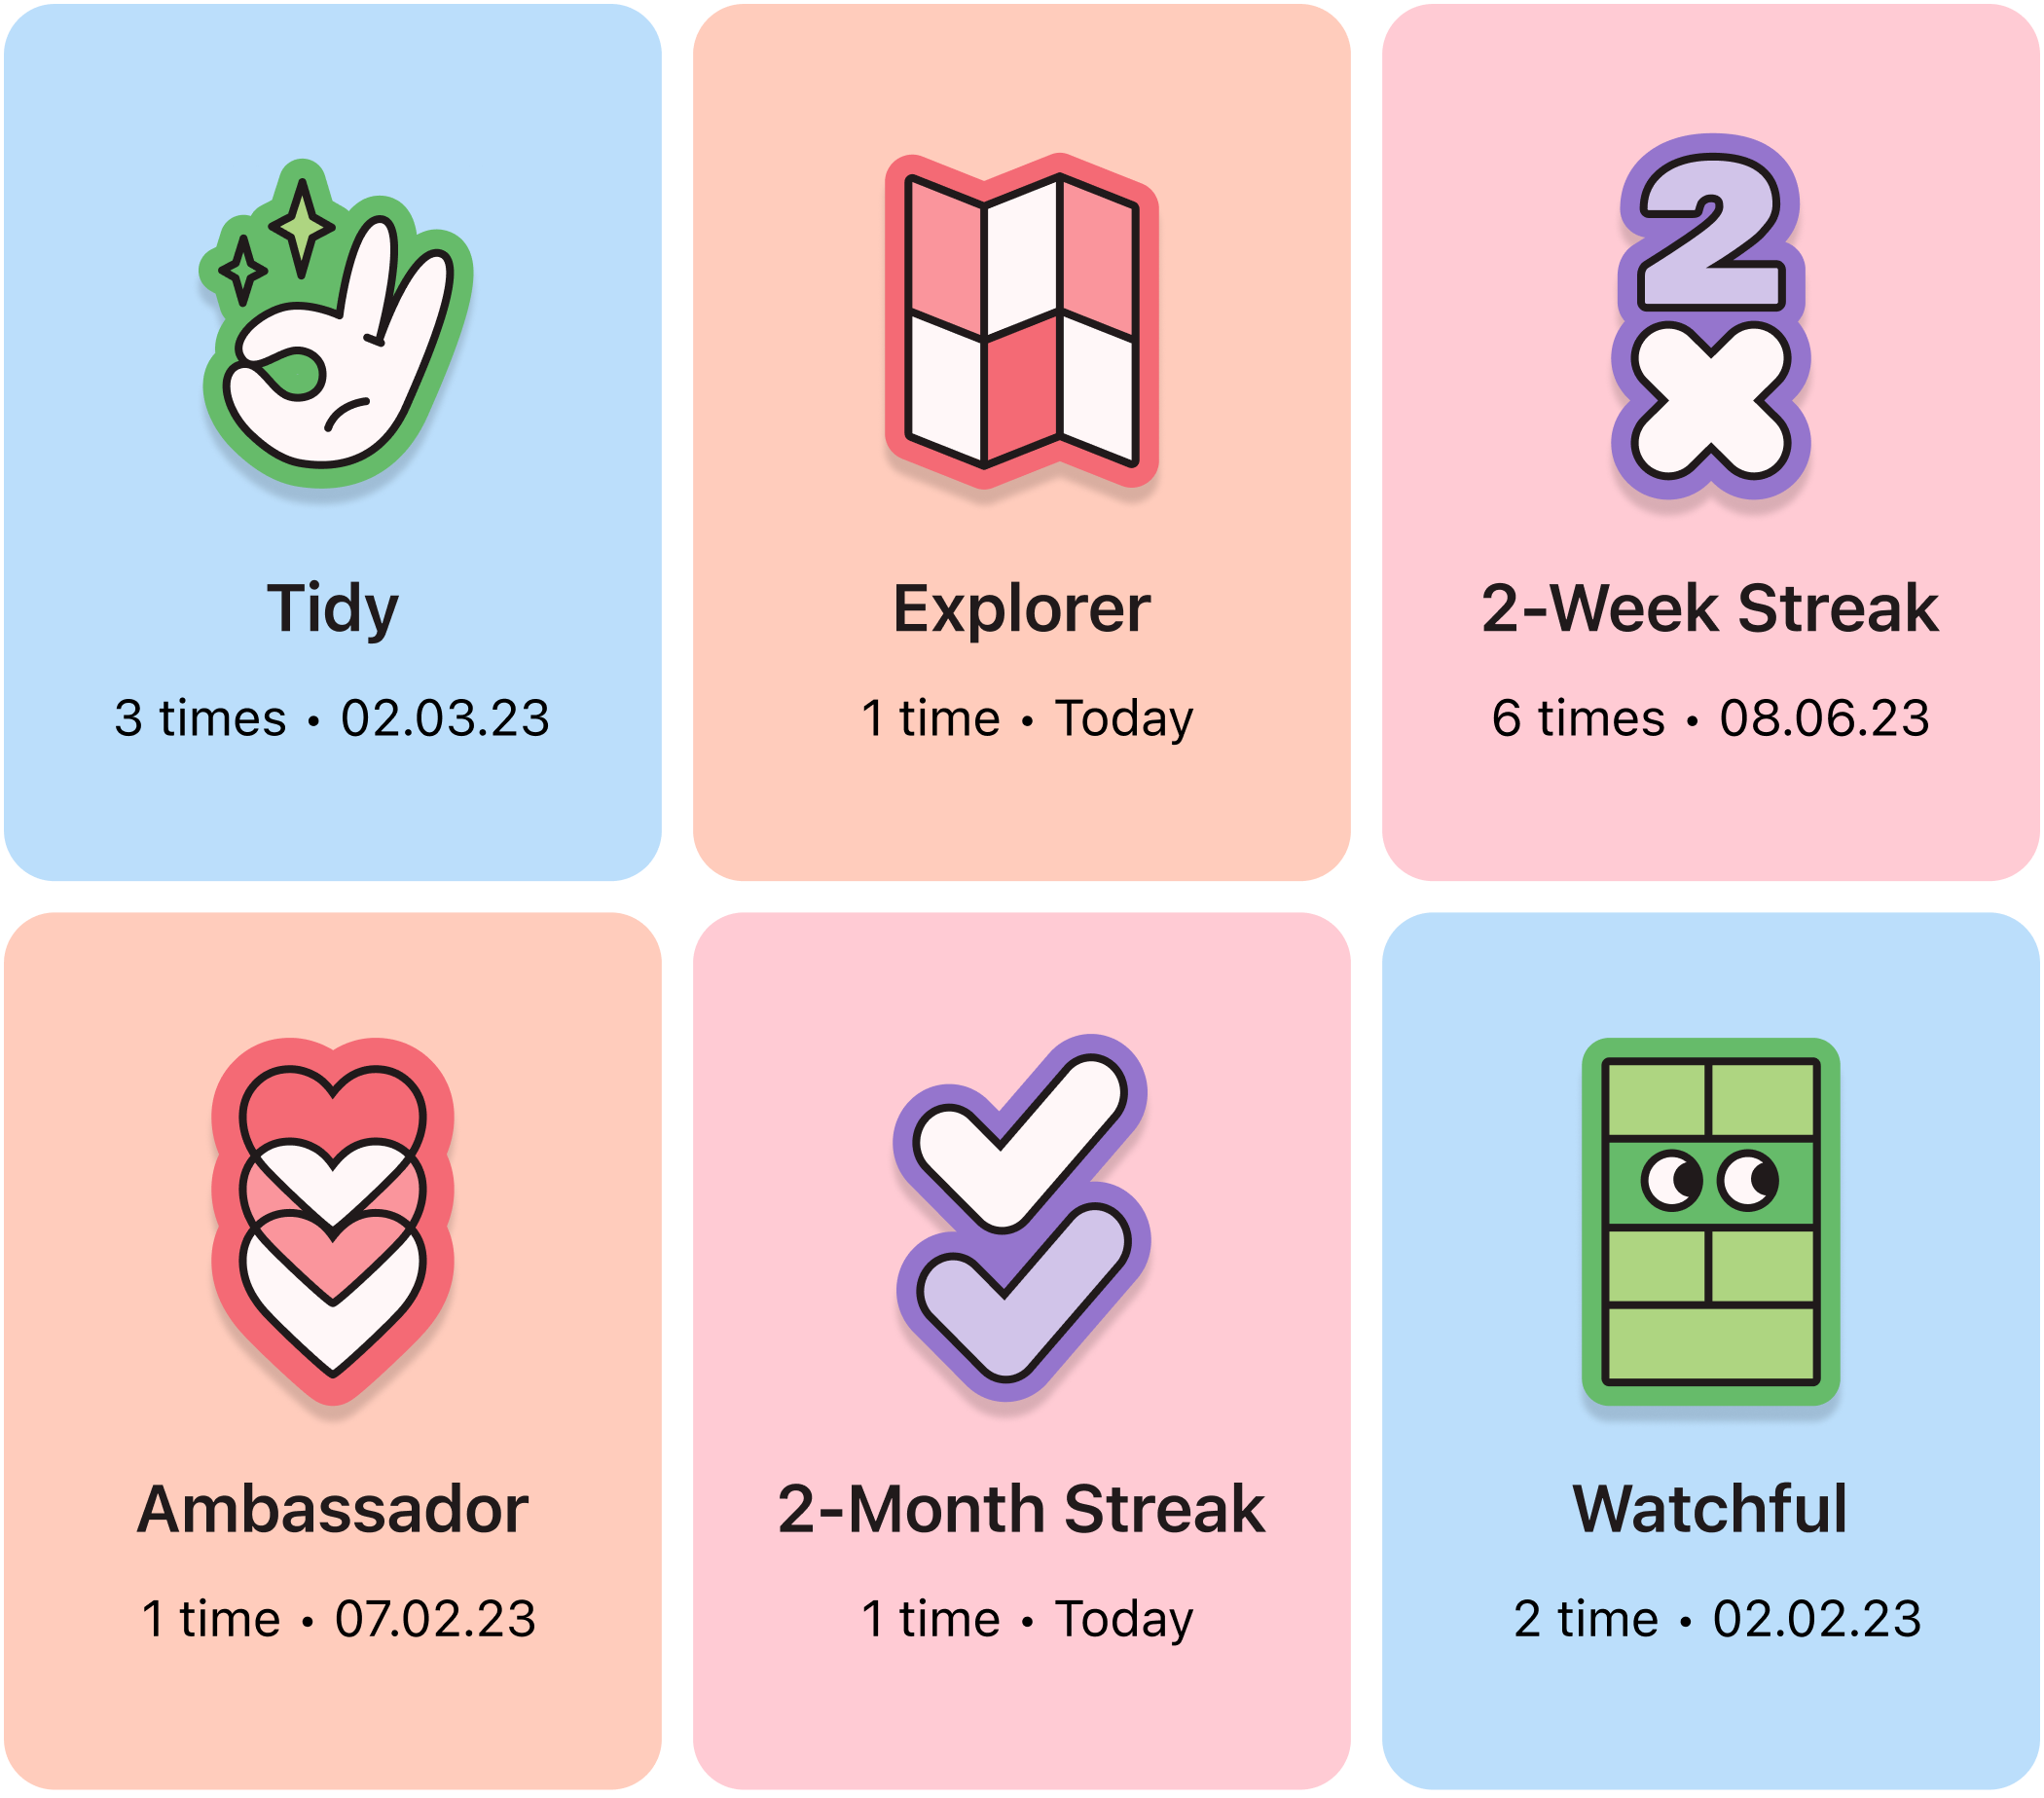 Badges for completed tasks